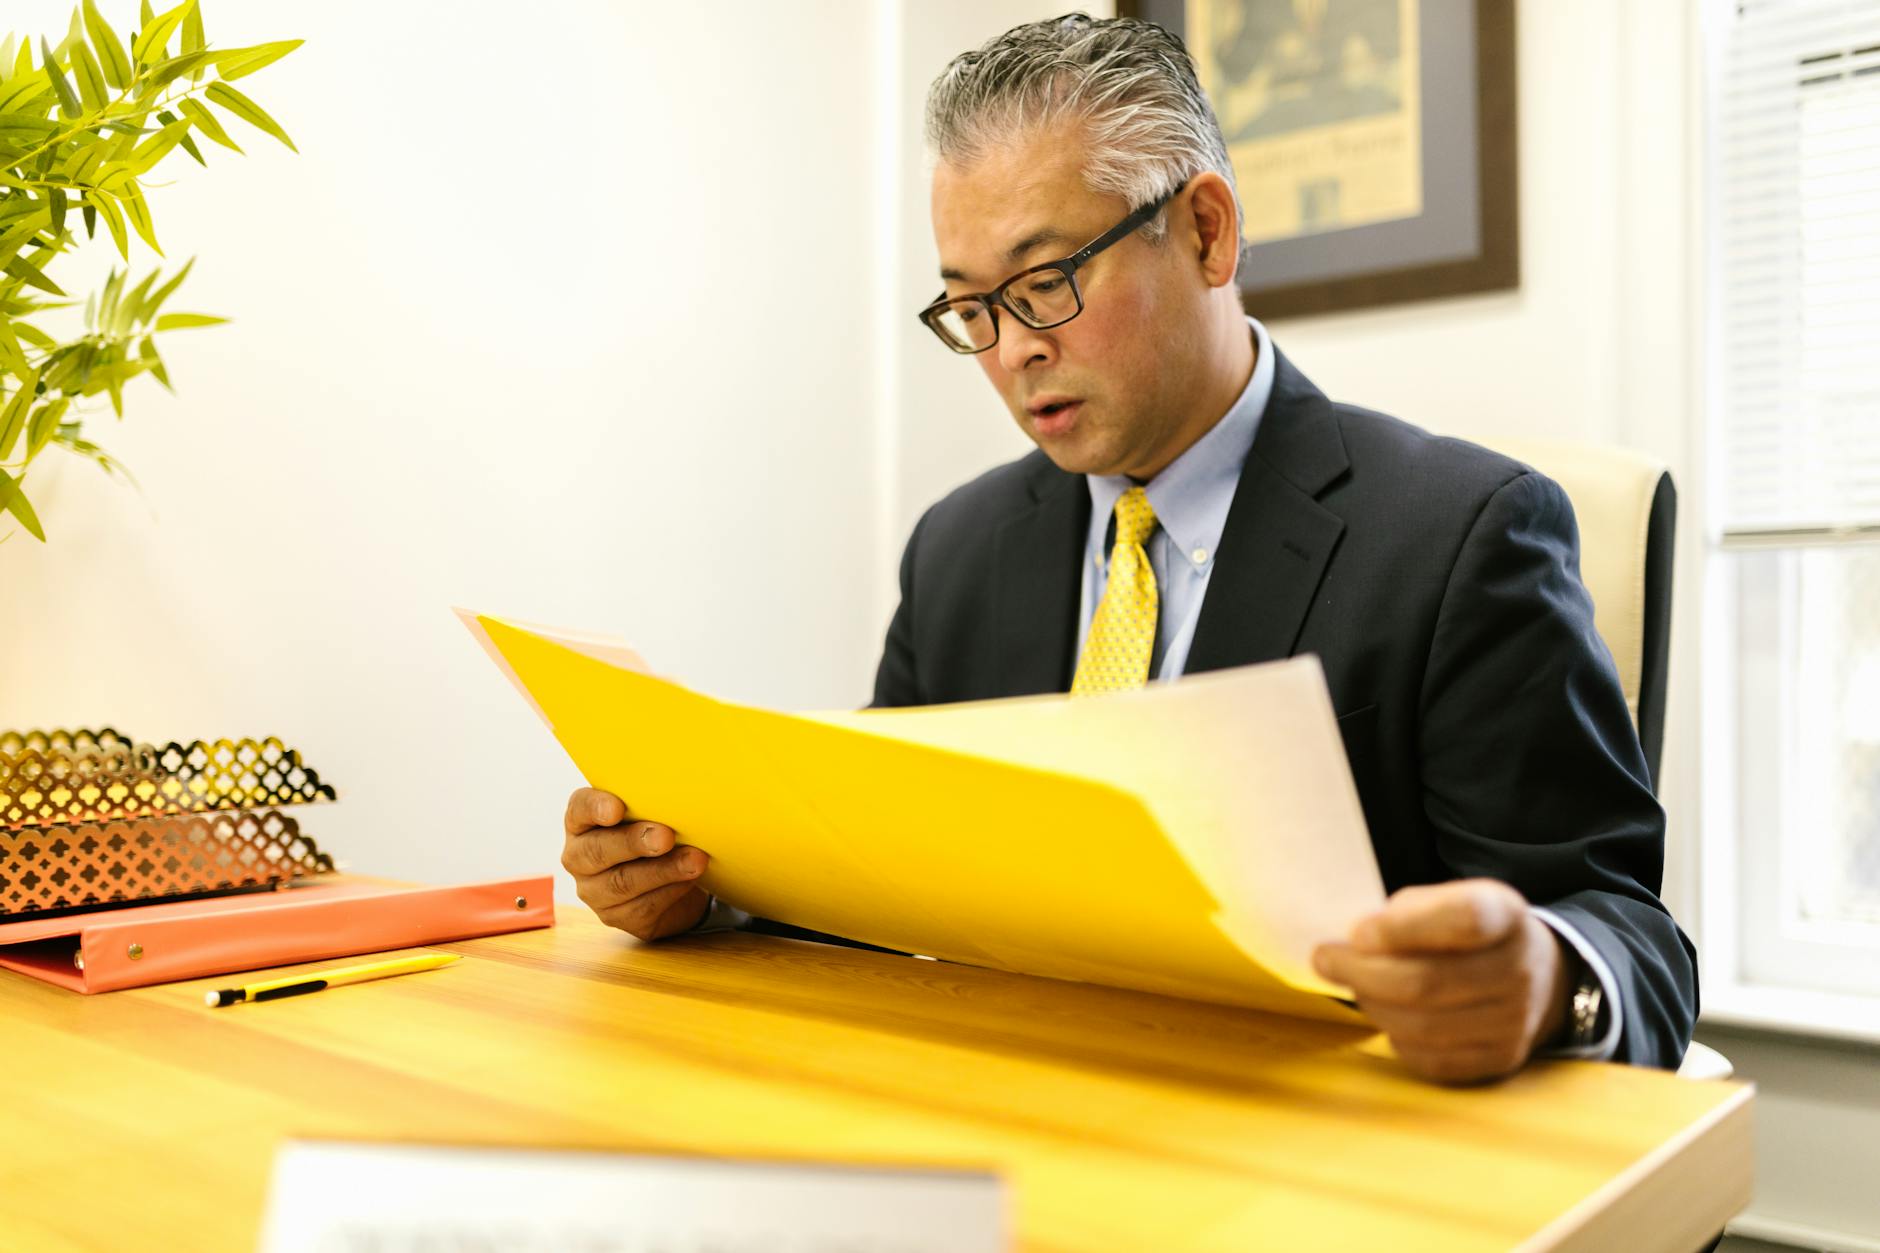 A Man Looking at Files at an Office